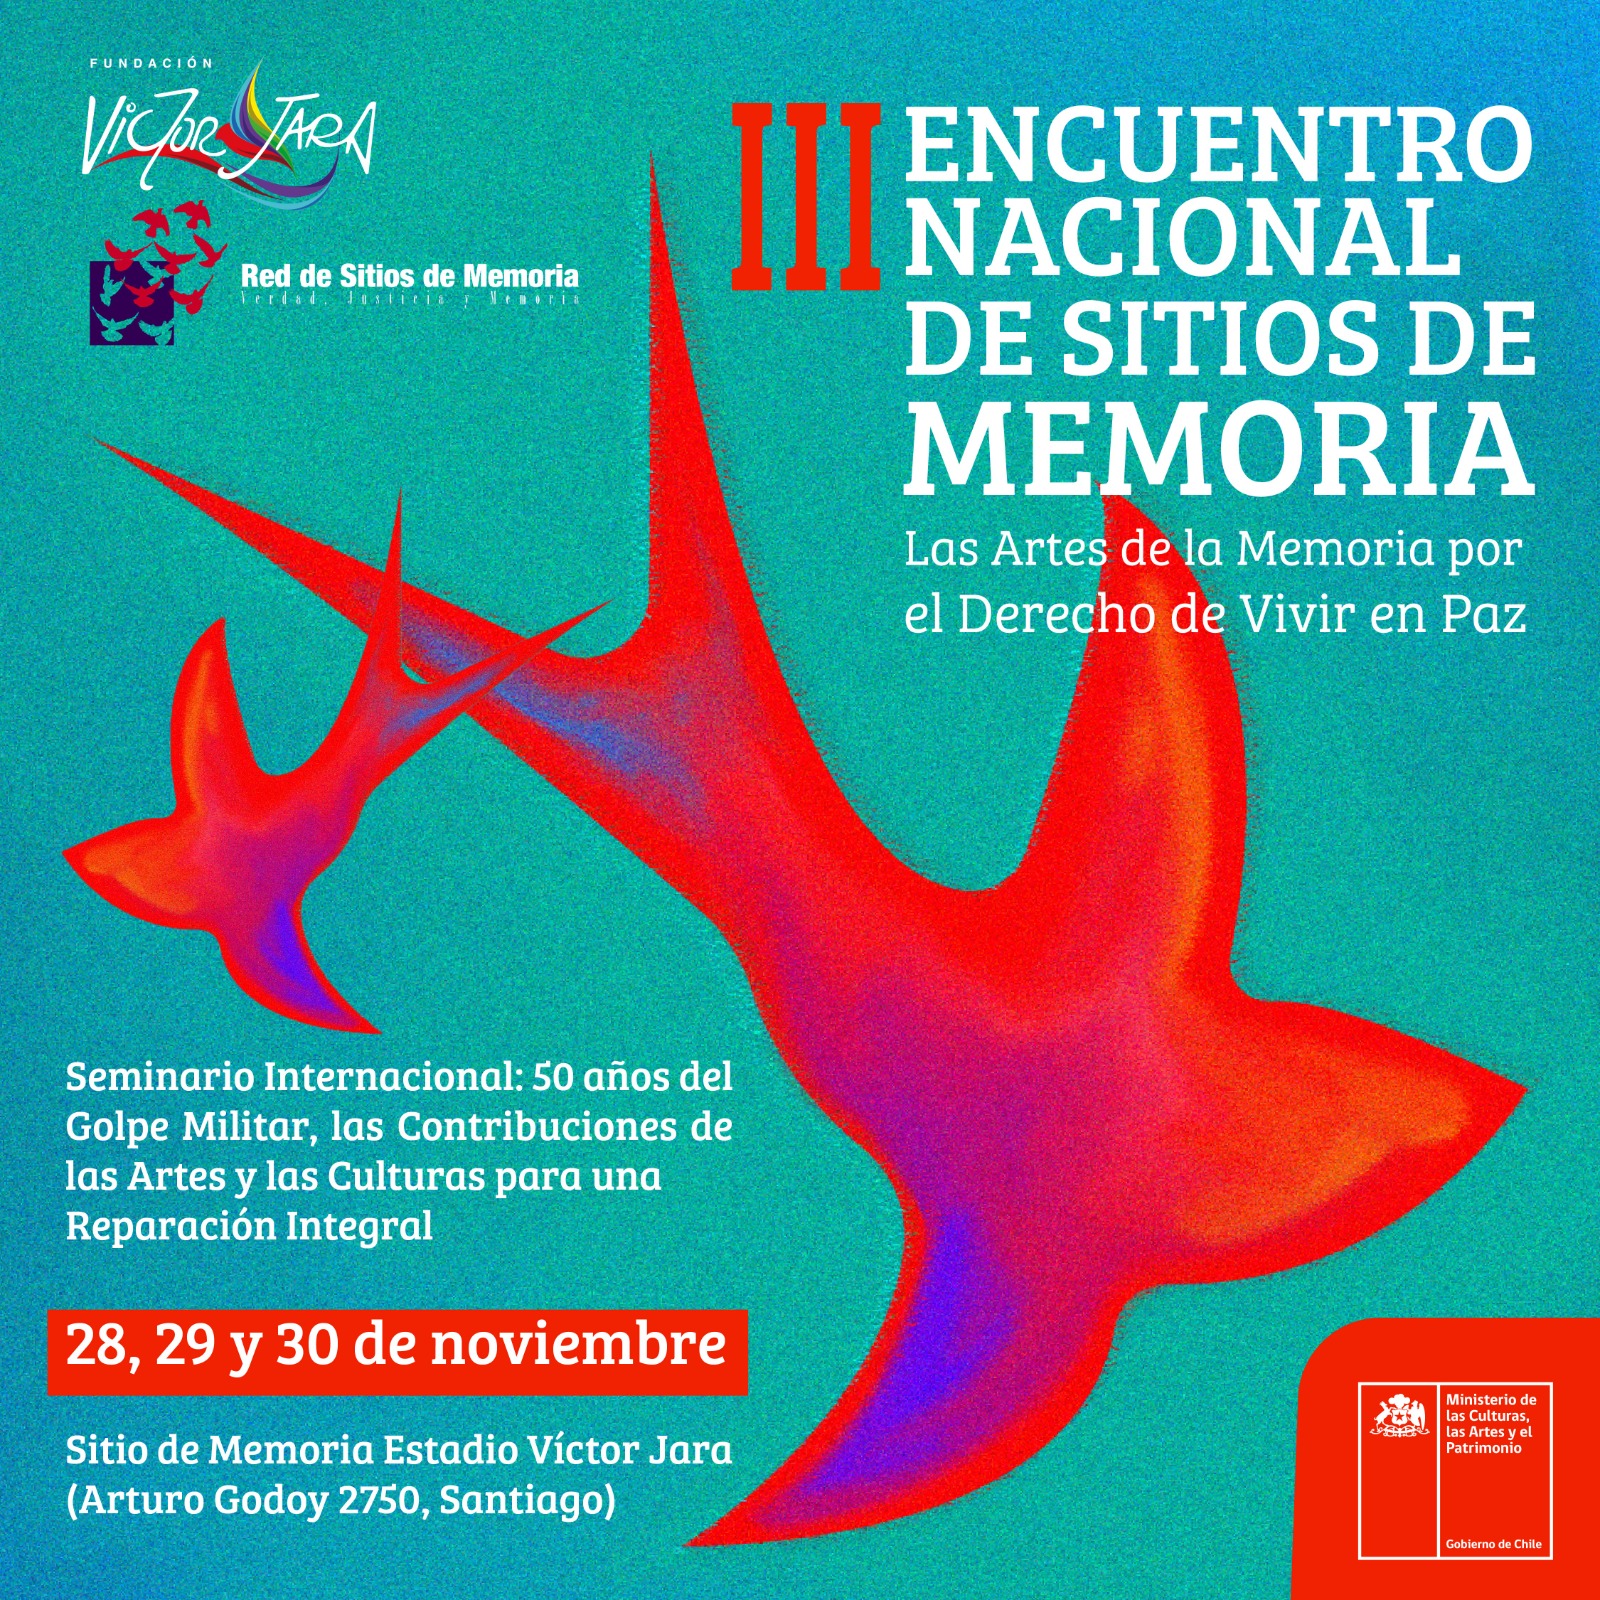 «Las Artes de la Memoria por el Derecho de Vivir en Paz»: Estadio Víctor Jara recibe al 3° Encuentro Nacional de Sitios de Memoria